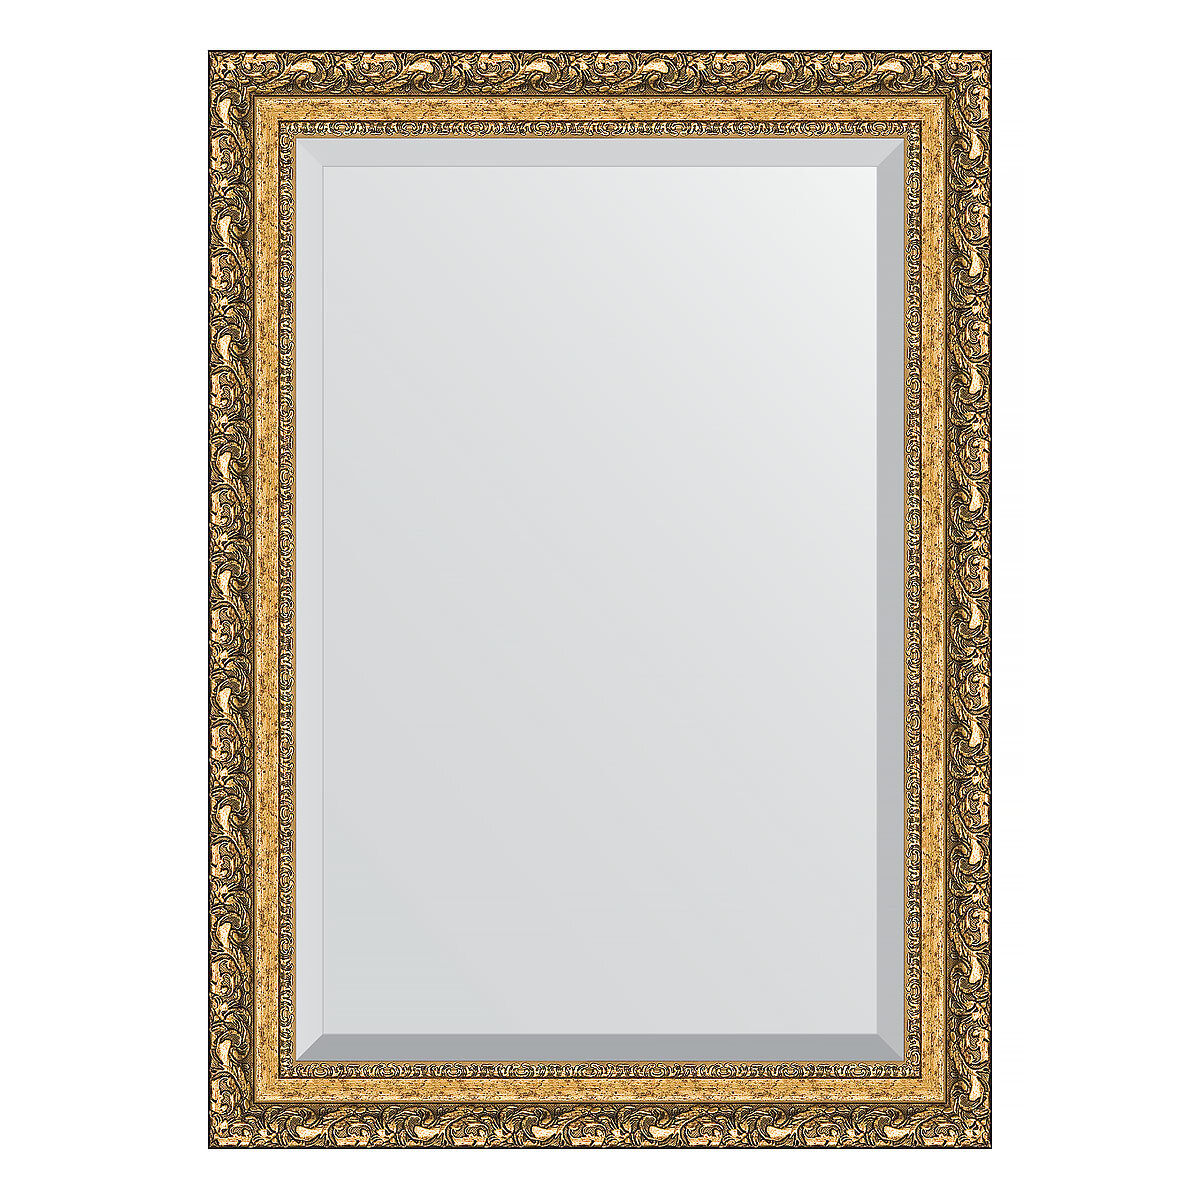 Зеркало настенное с фацетом EVOFORM в багетной раме виньетка бронзовая, 75х105 см, для гостиной, прихожей, спальни и ванной комнаты, BY 1300